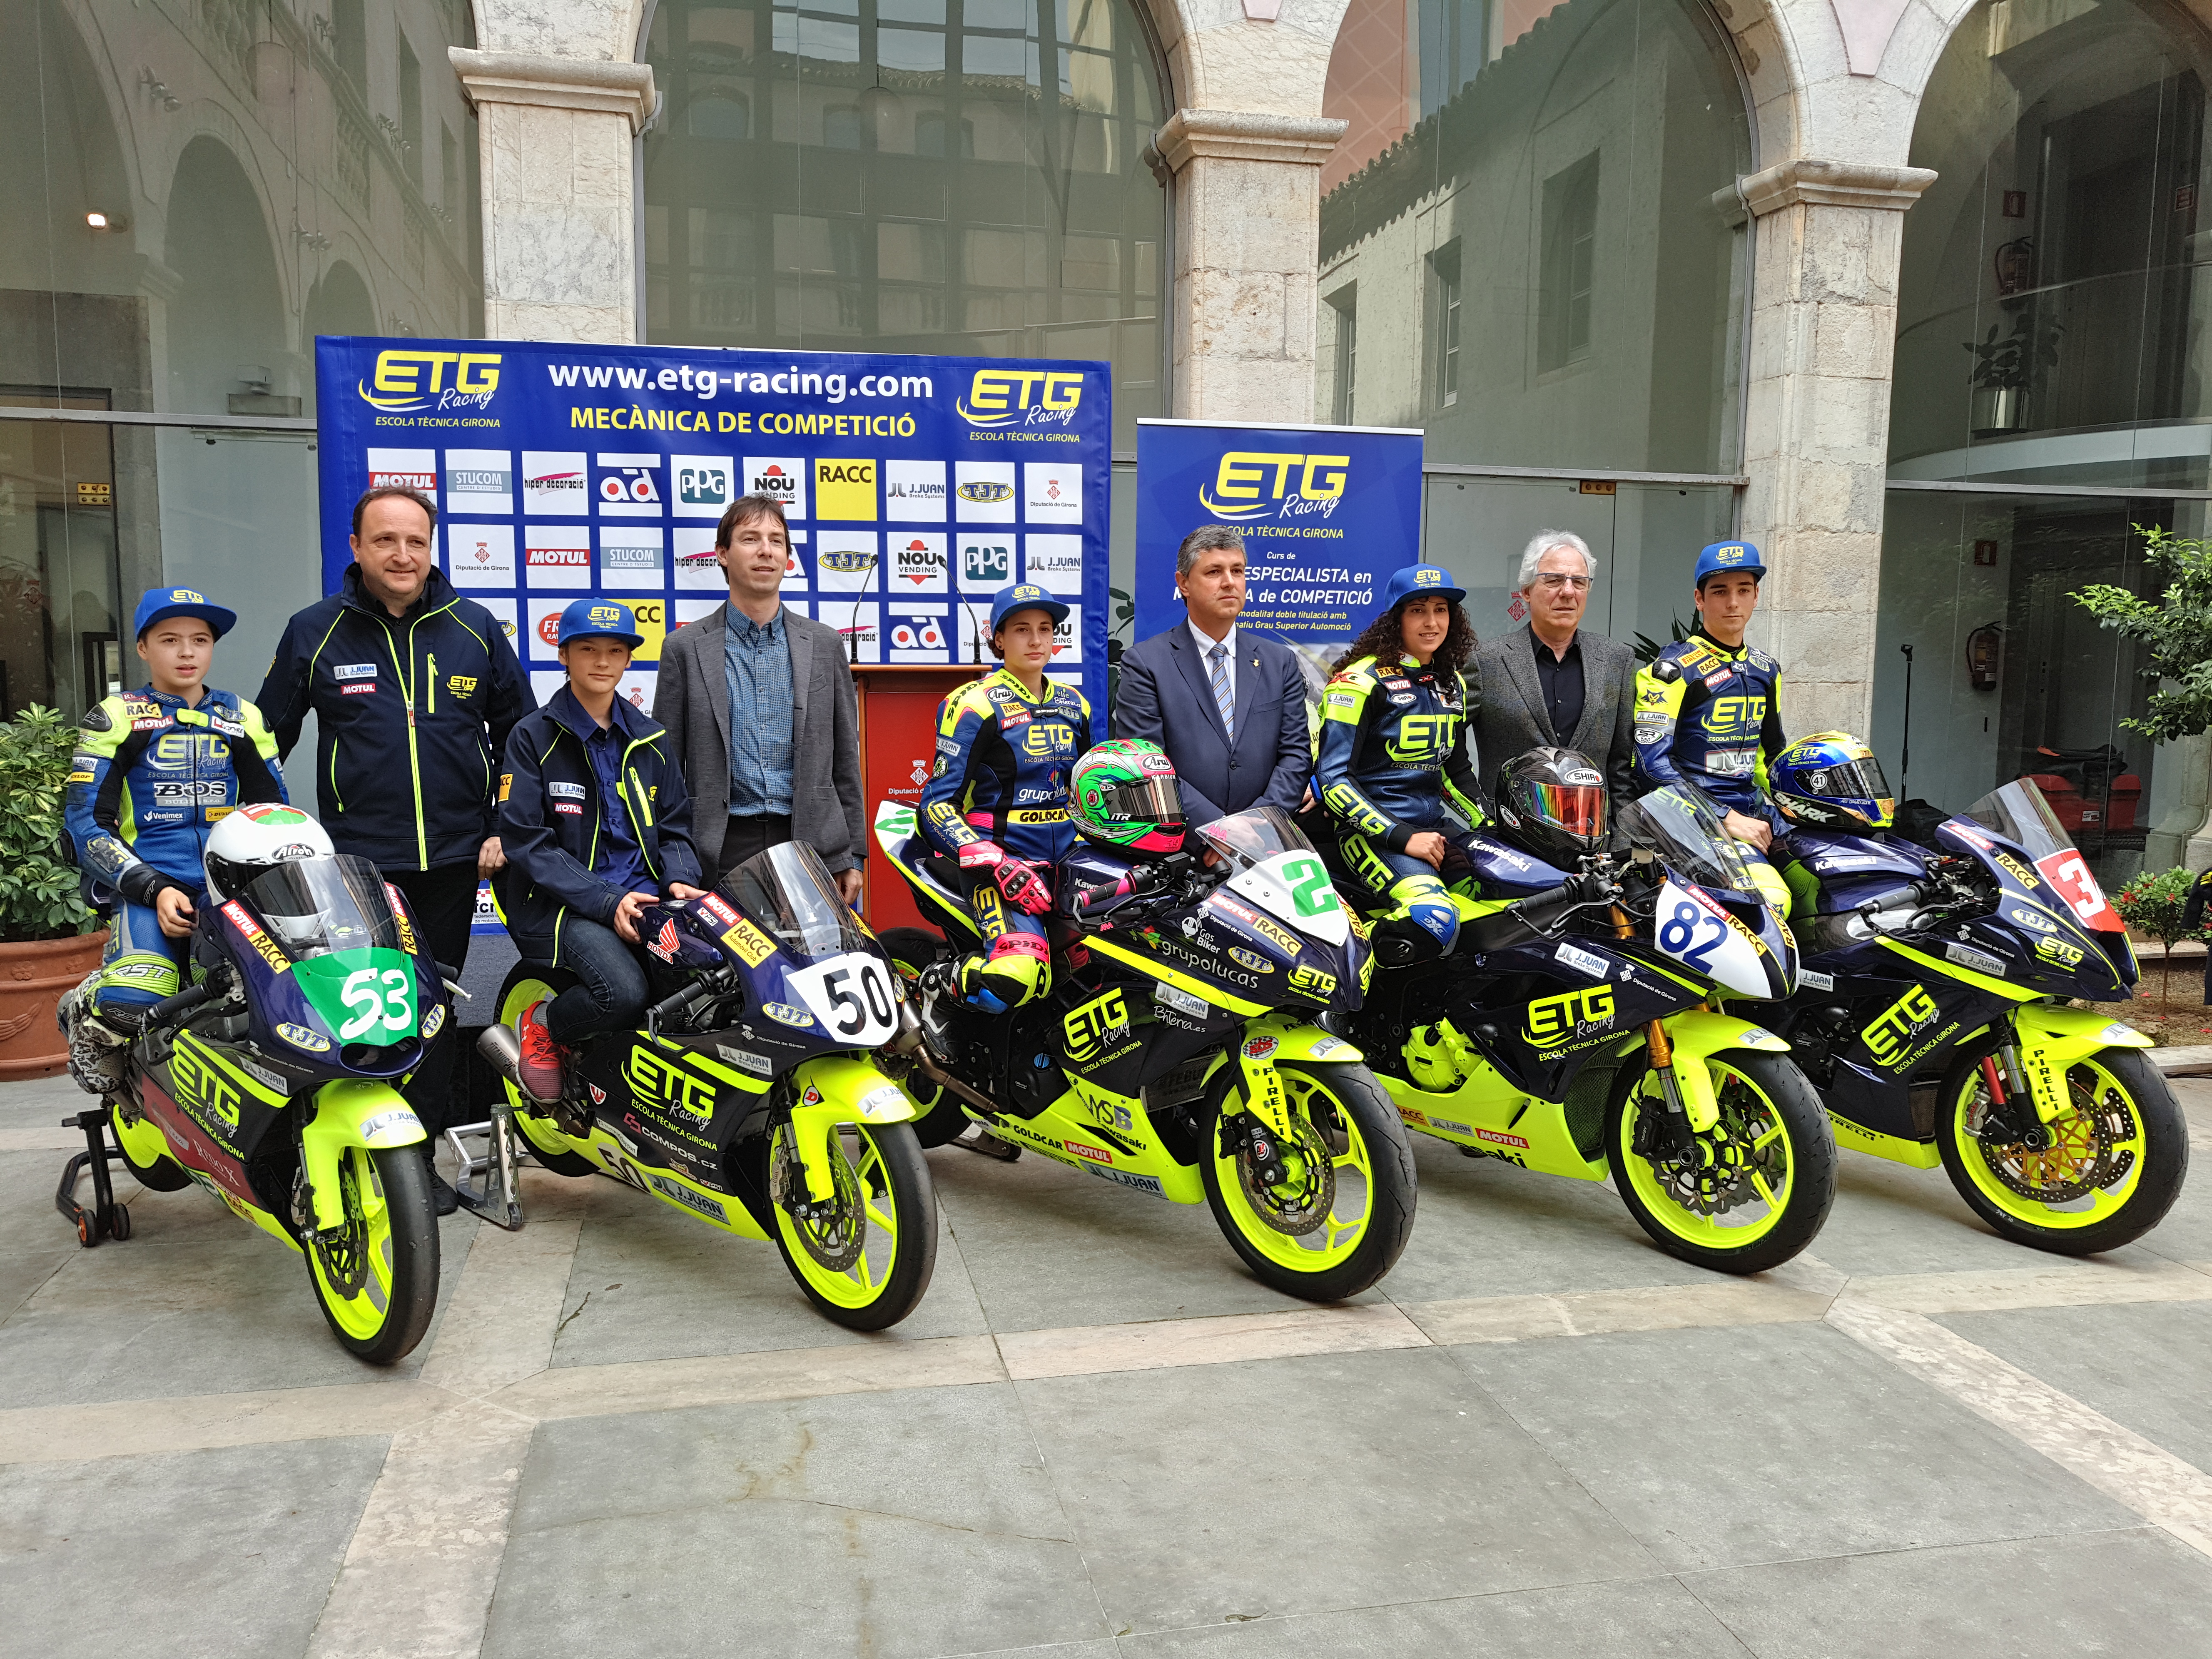 Presentació de l’equip gironí de motociclisme, ETG Ràcing, a la Diputació de Girona